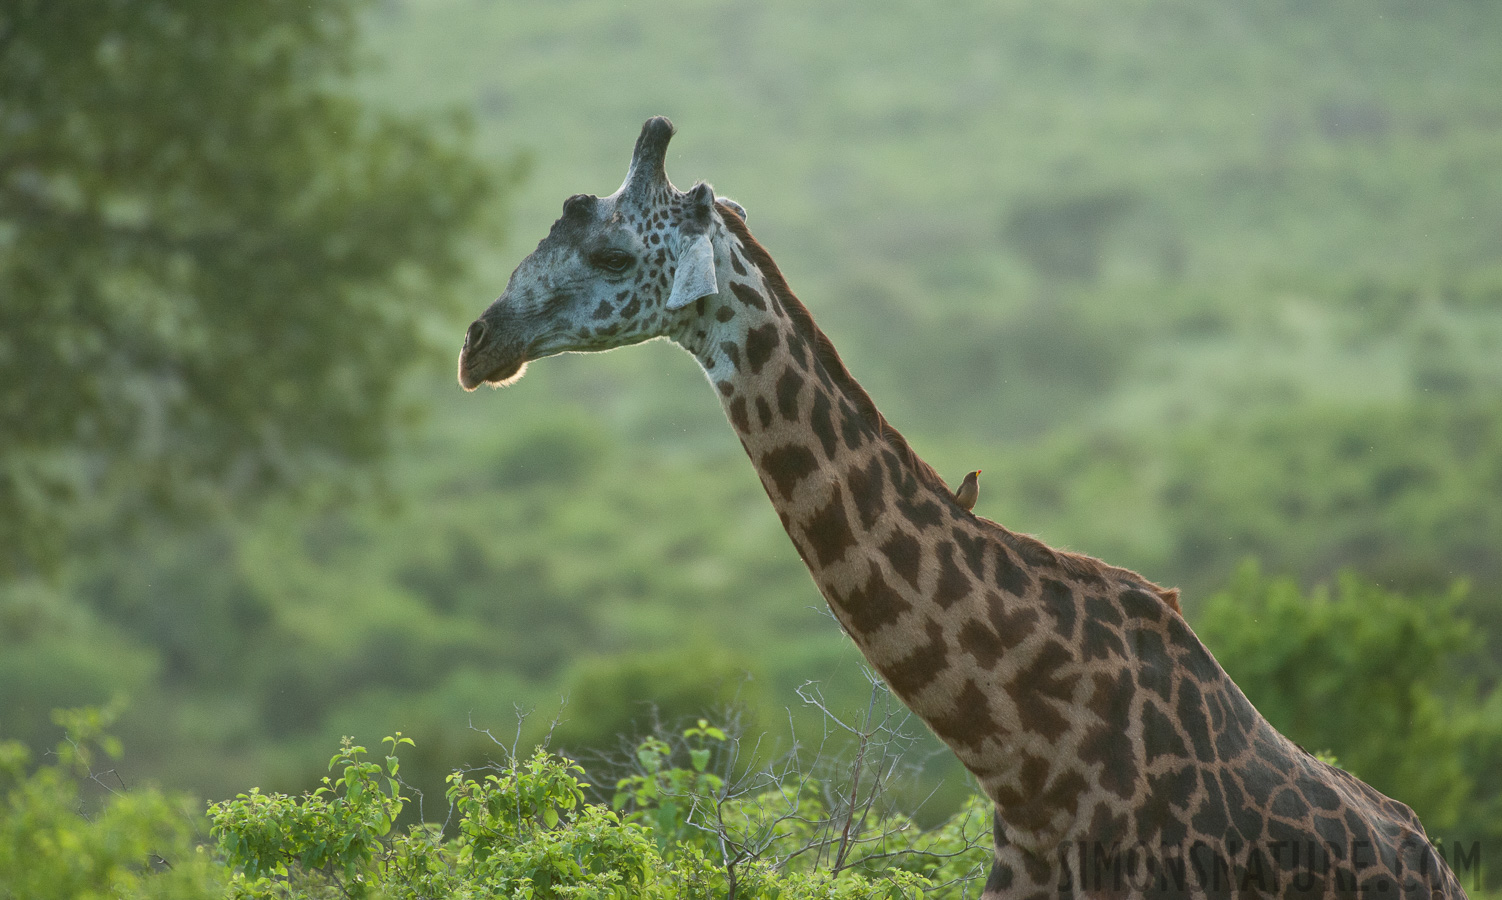 Giraffa tippelskirchi [550 mm, 1/1000 sec at f / 6.3, ISO 2500]